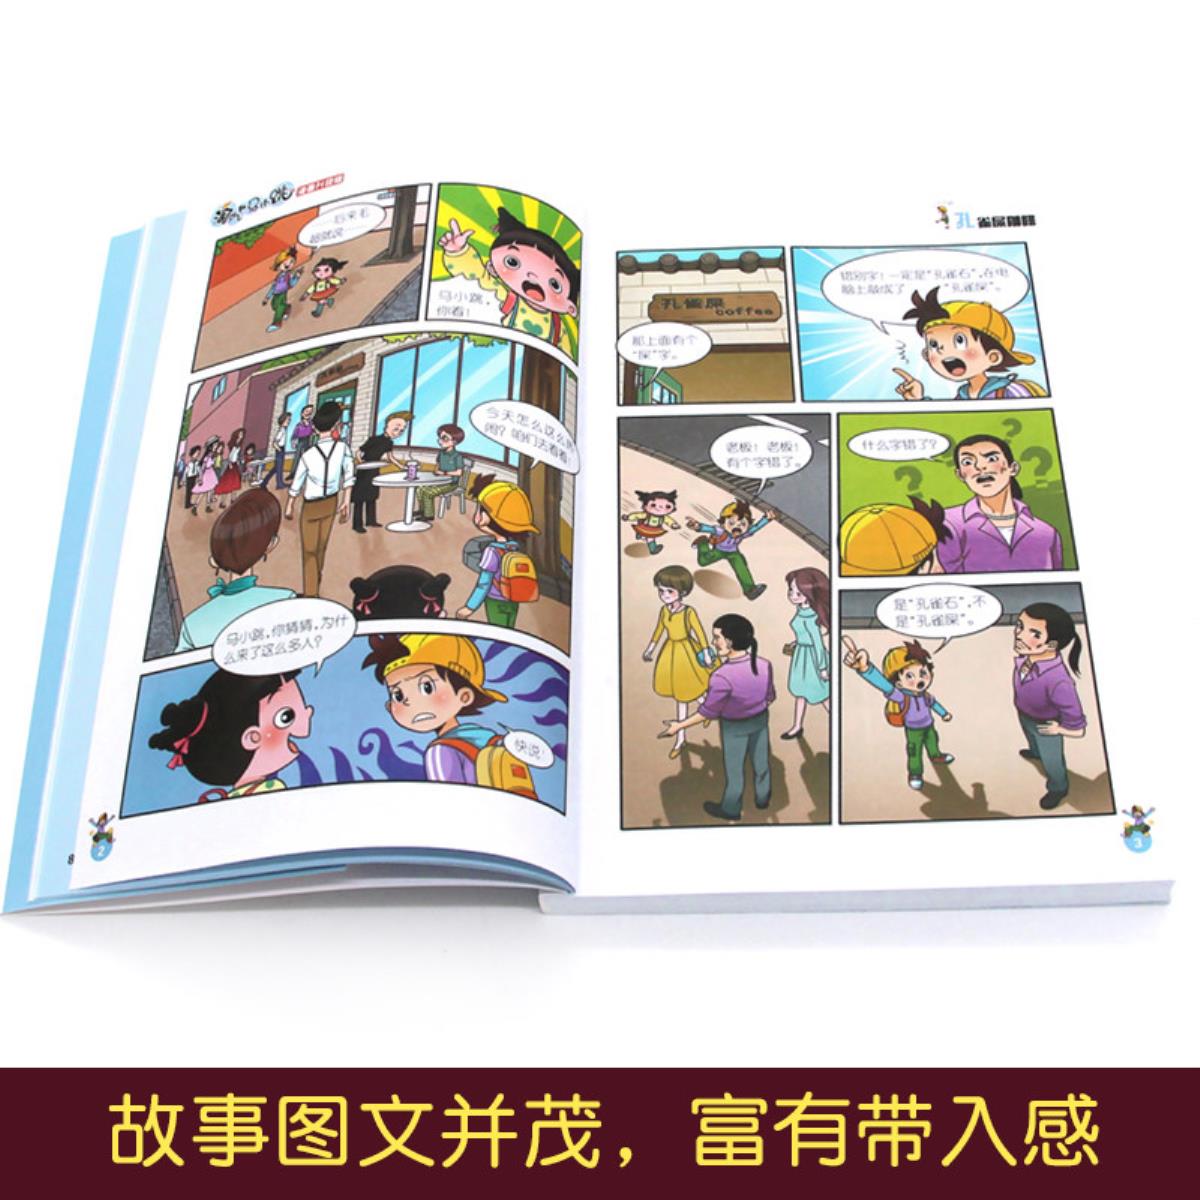 第22册淘气包马小跳漫画升级版白雪公主小剧团杨红樱的书全套校